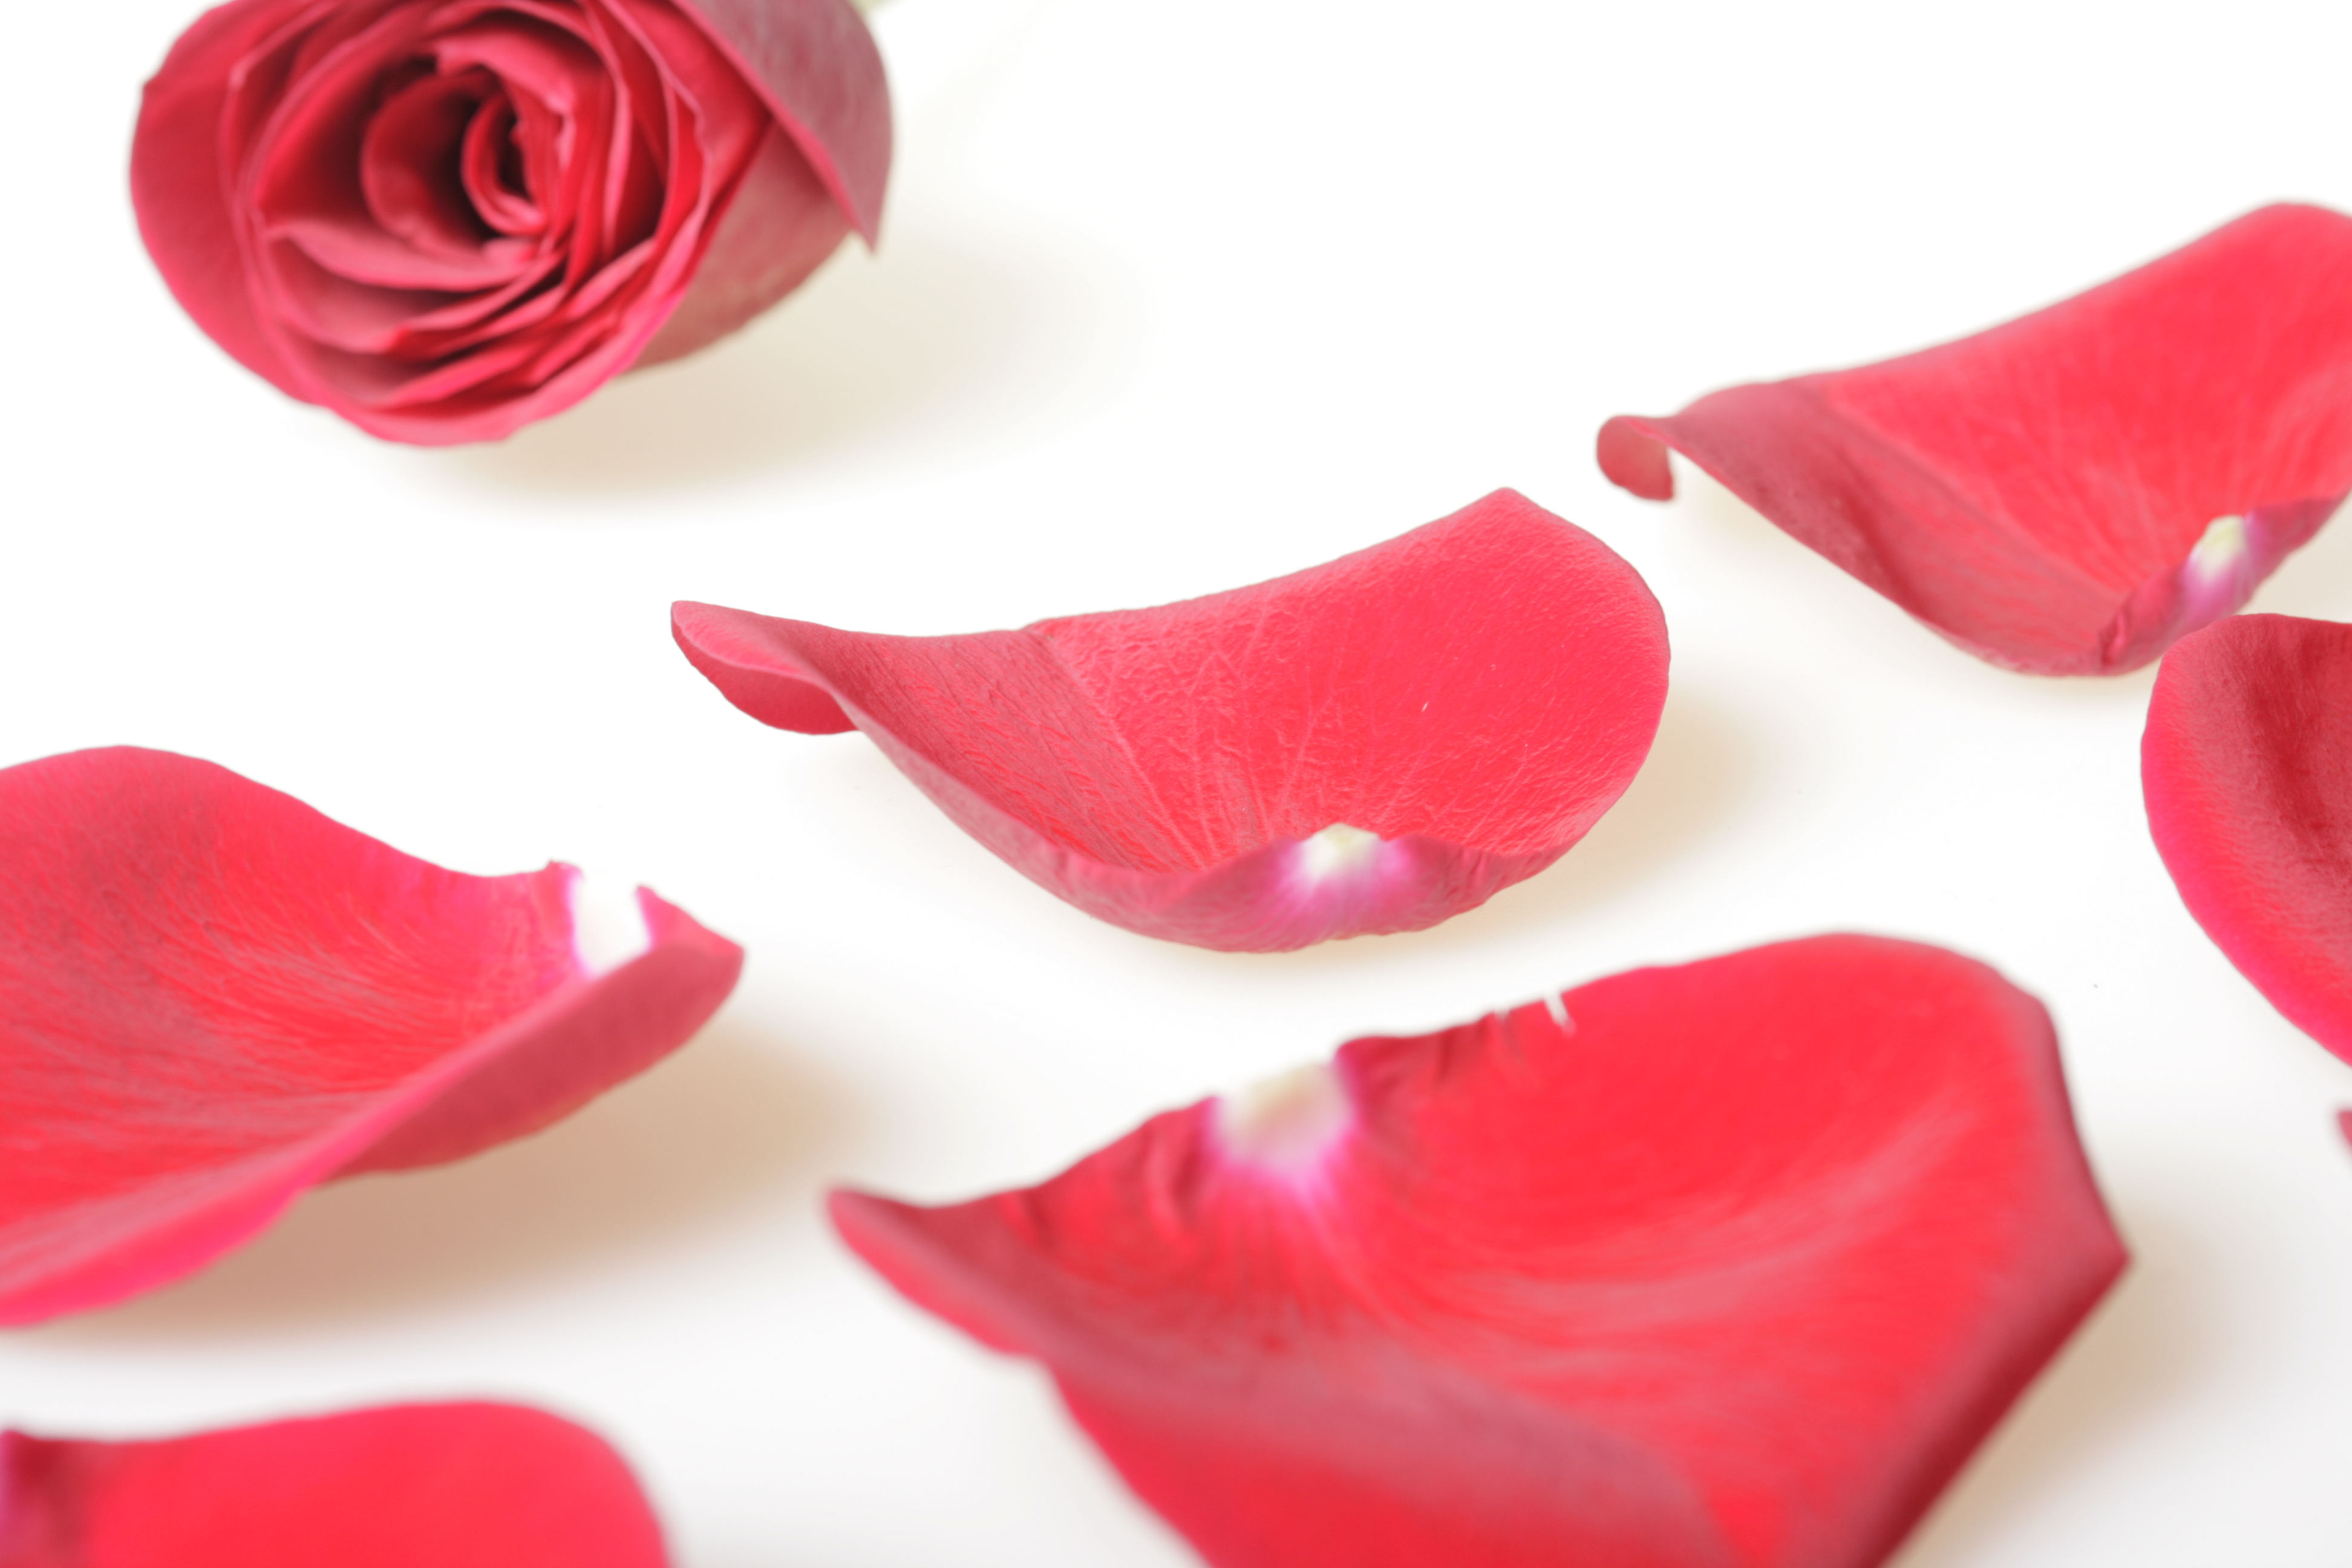 Rose petals photo